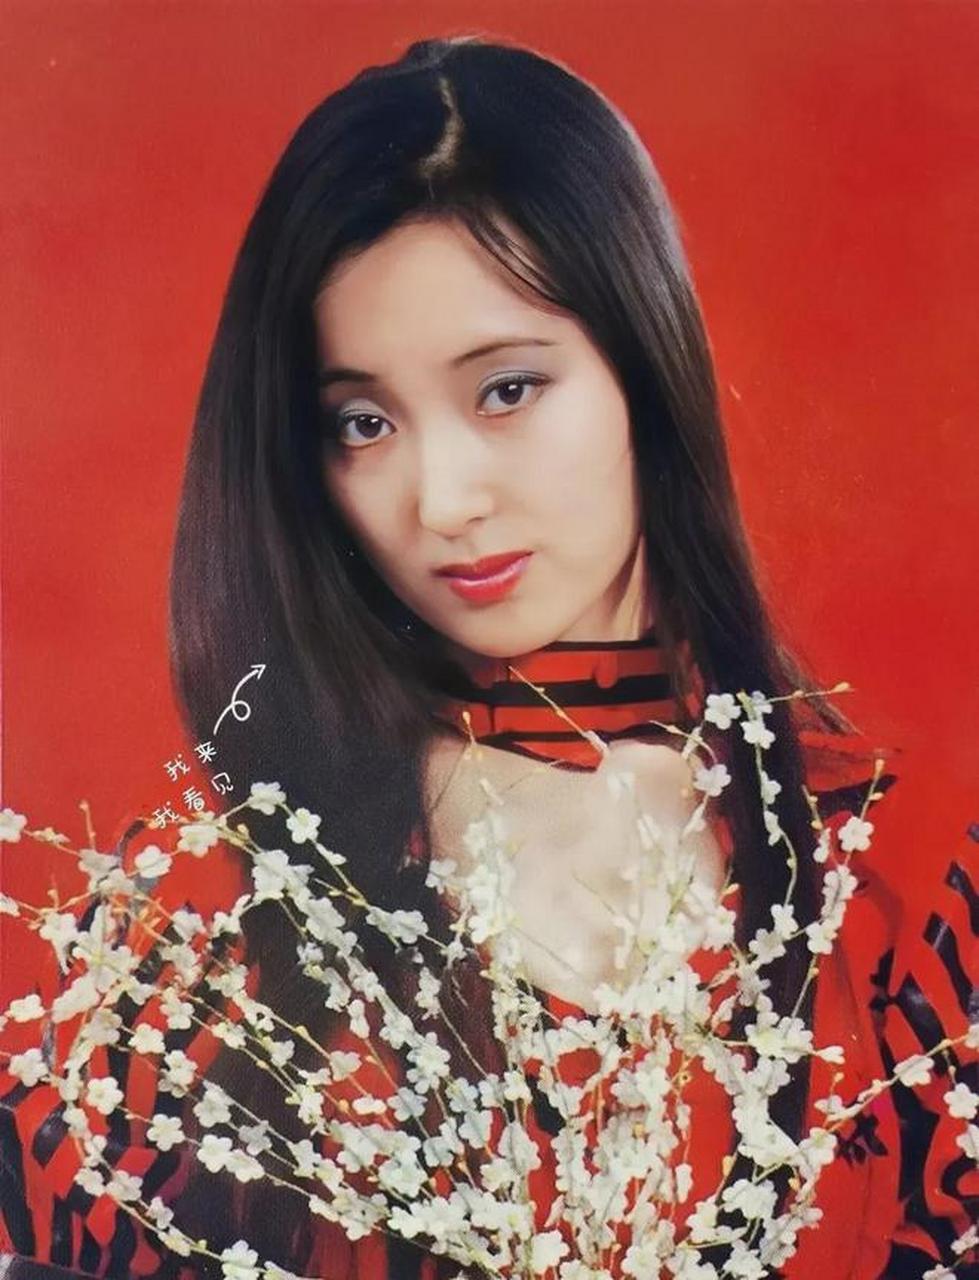 在上个世纪80年代,陈晓旭的几张艺术照中,她展现出了一种特别素洁淡雅